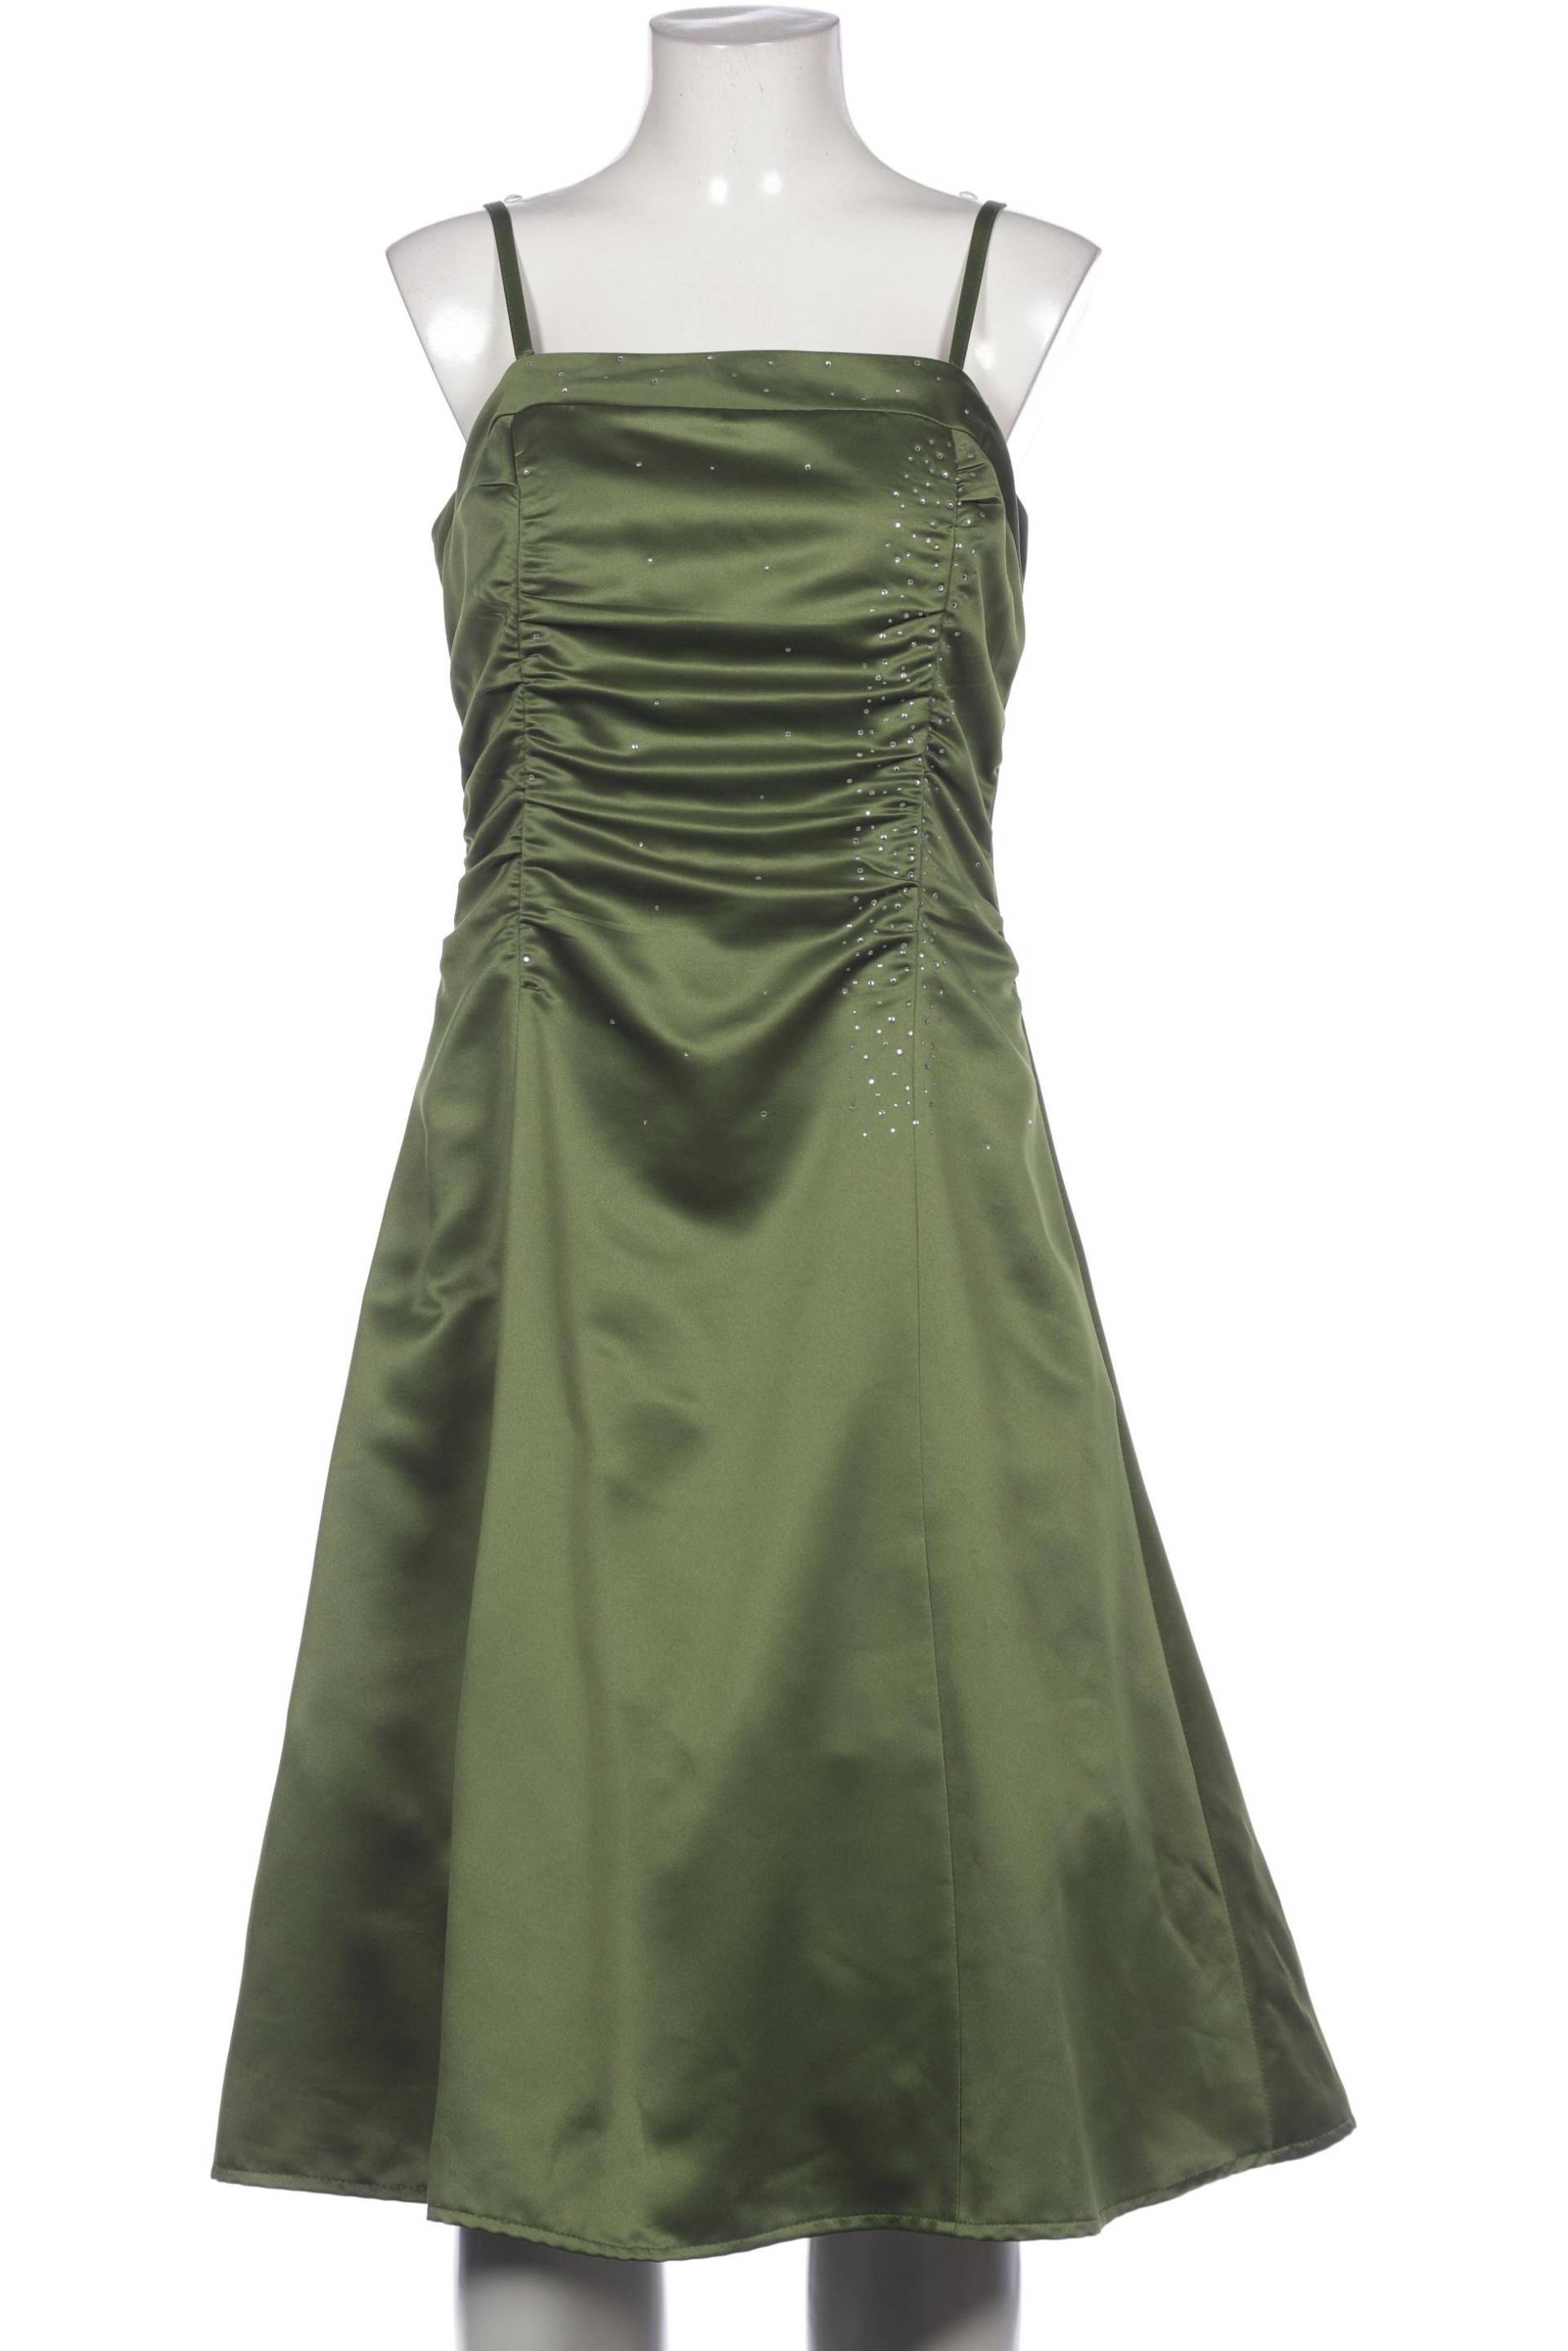 Mariposa Damen Kleid, grün, Gr. 40 von Mariposa